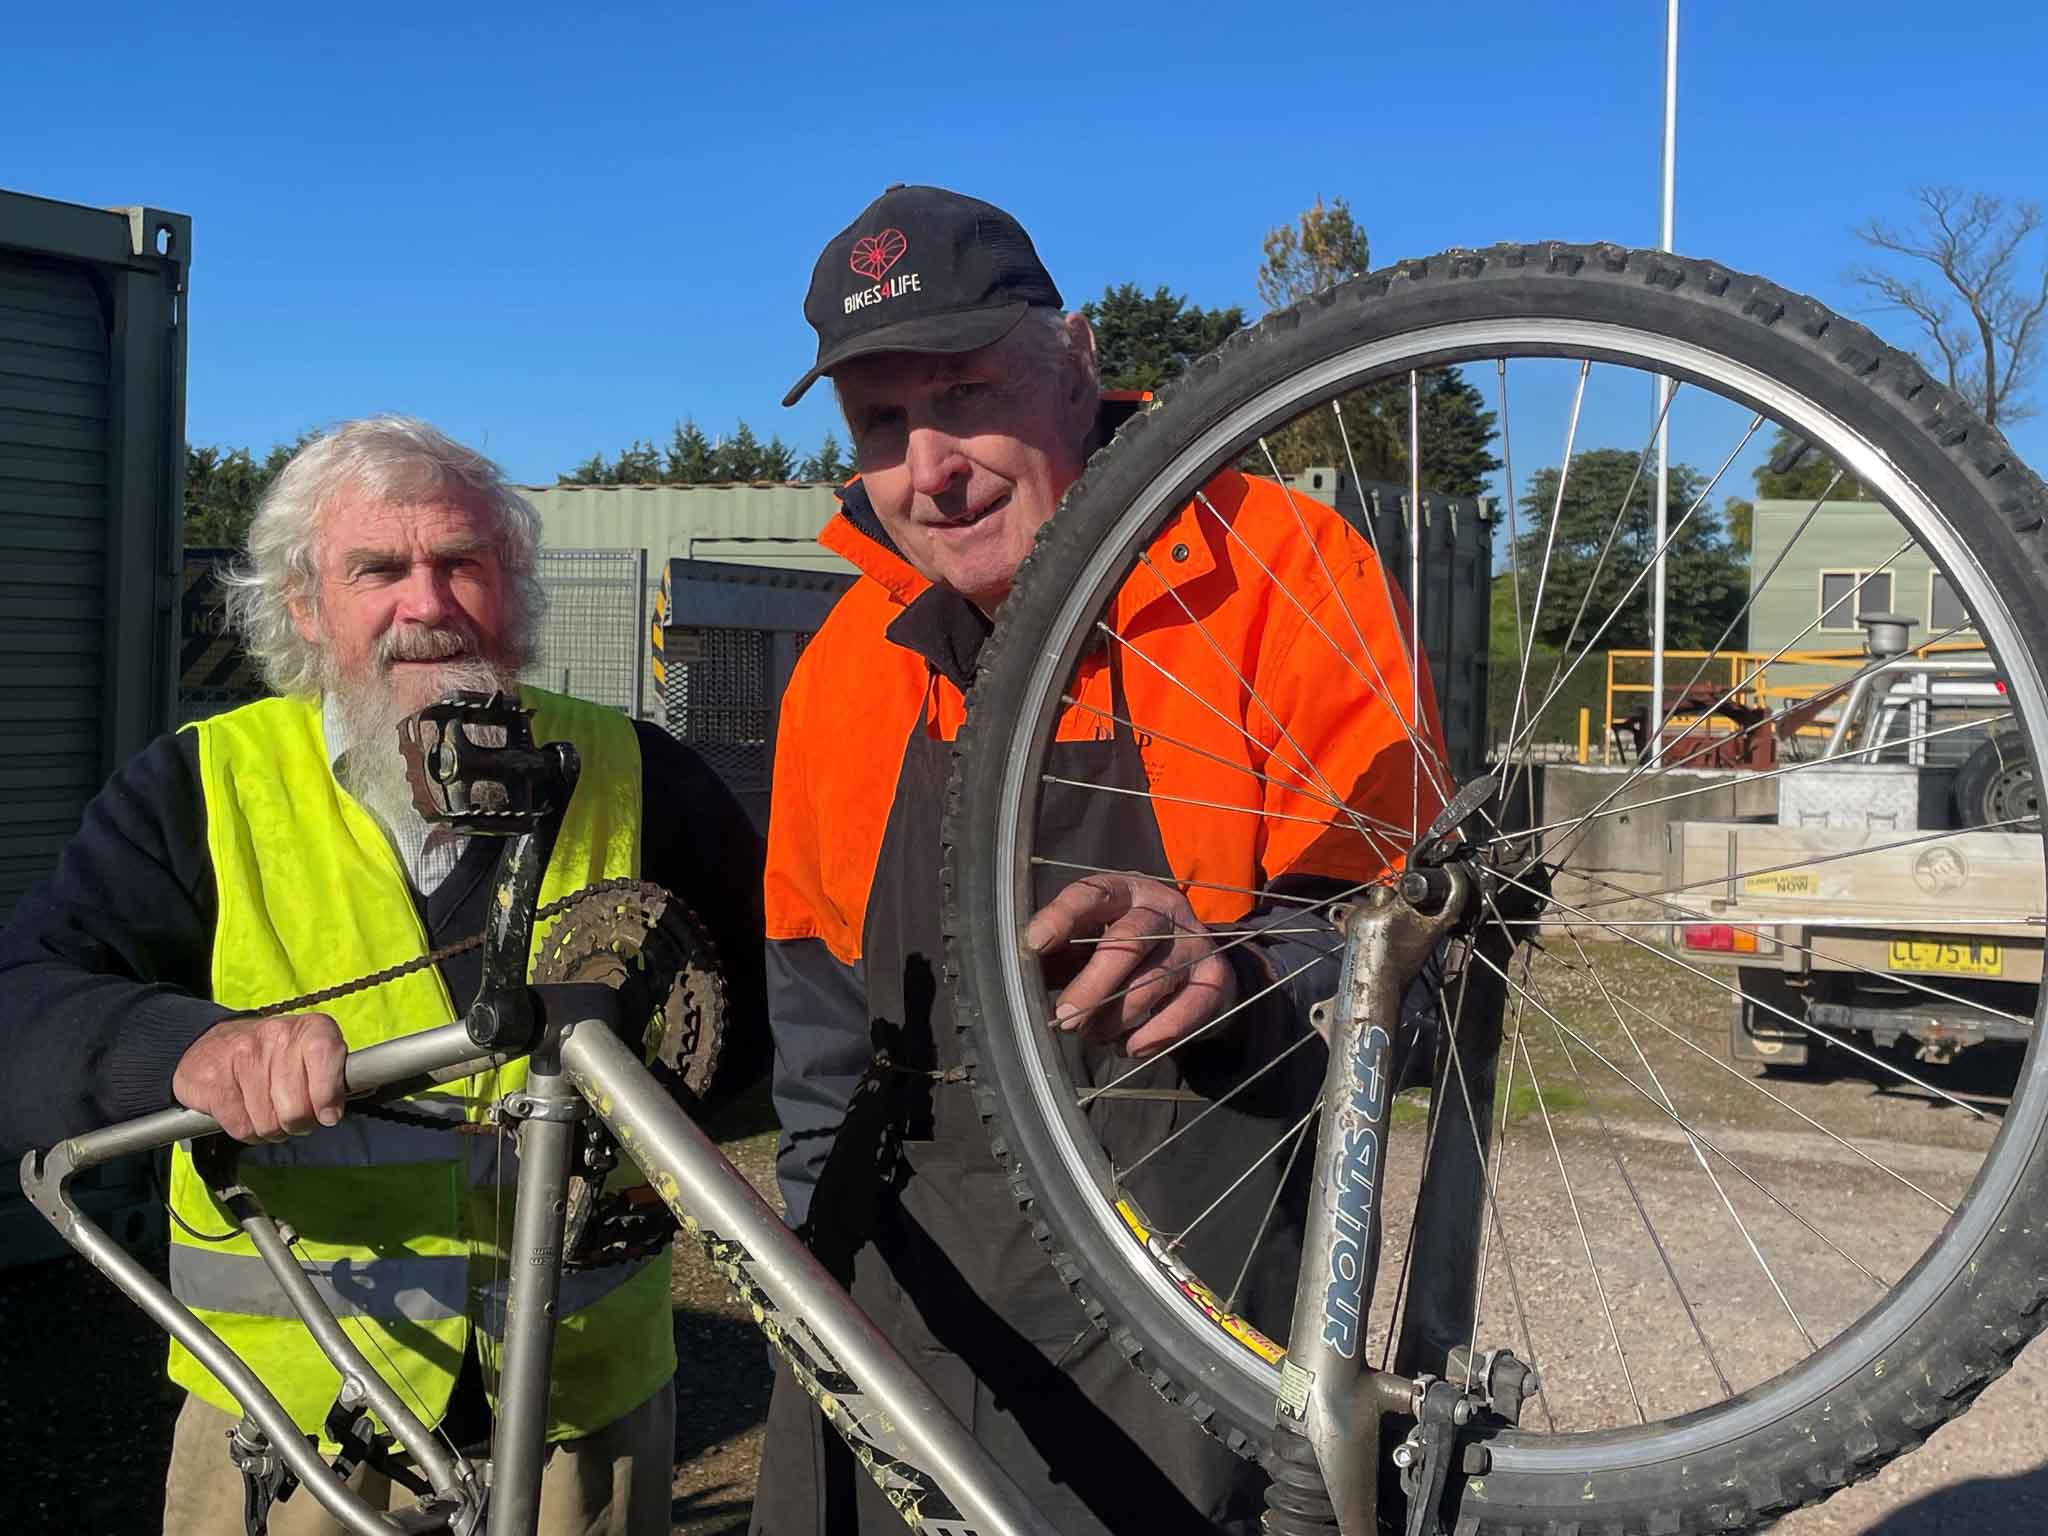 Two men repairing a bike